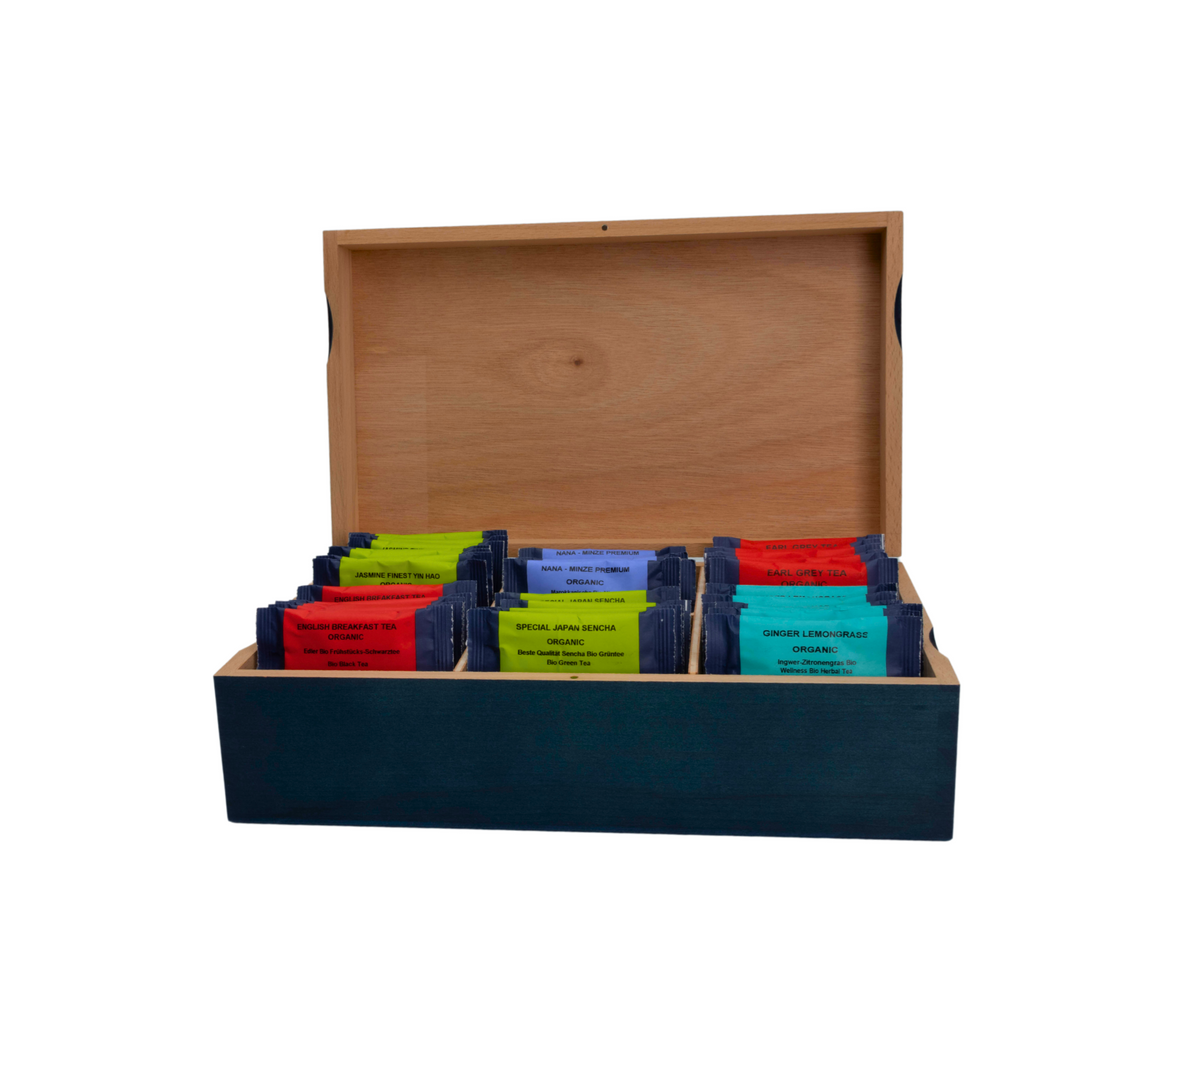 Holzbox mit Standard Teesorten